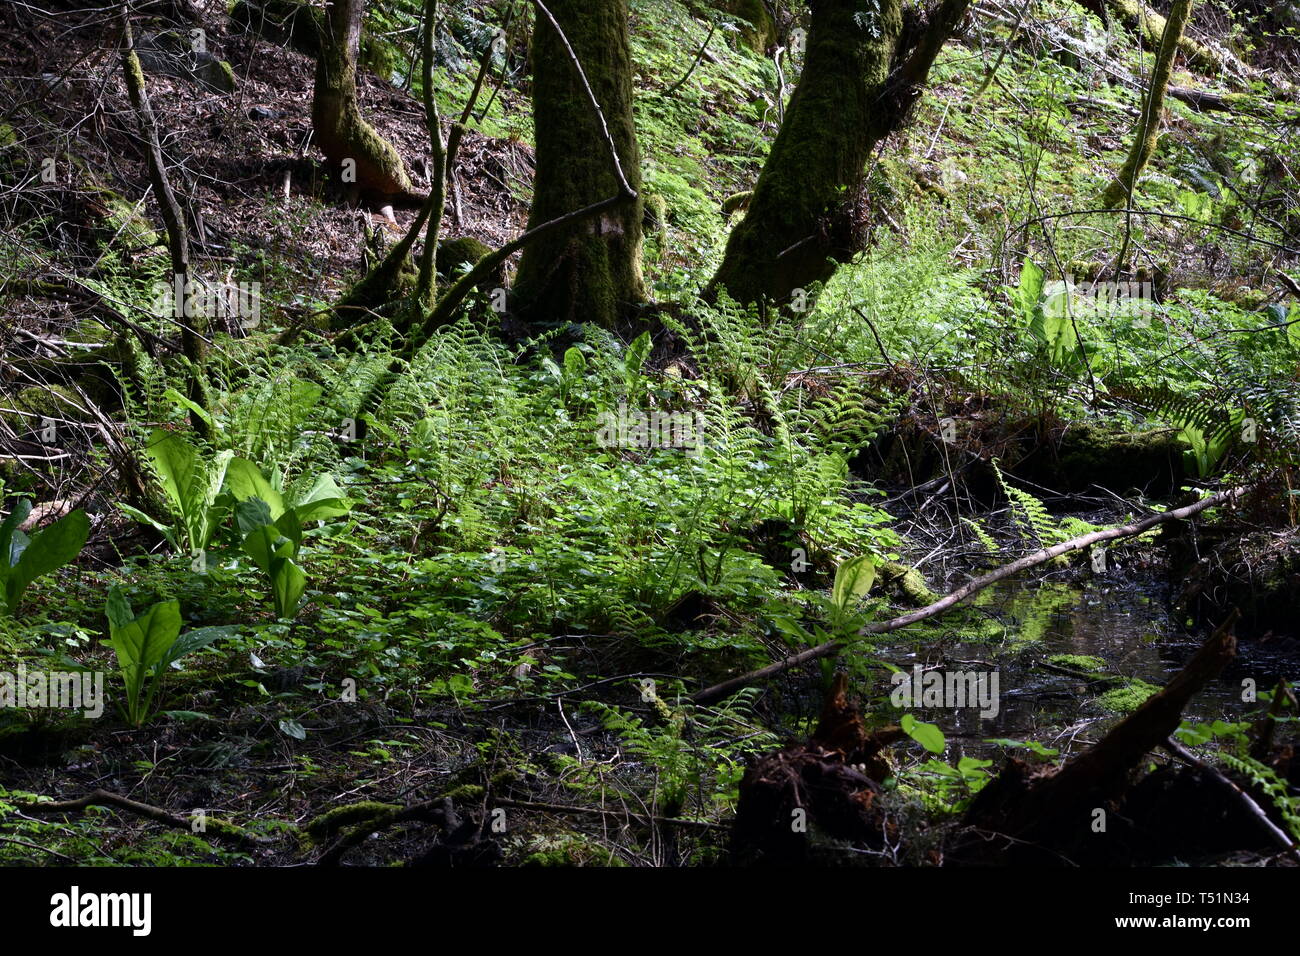 Fotografia della lussureggiante vegetazione trovata in un Squamish BC Canada foresta di pioggia. Una rara foresta pluviale urbana con lussureggiante vegetazione di felci e muschi e alberi secolari. Foto Stock